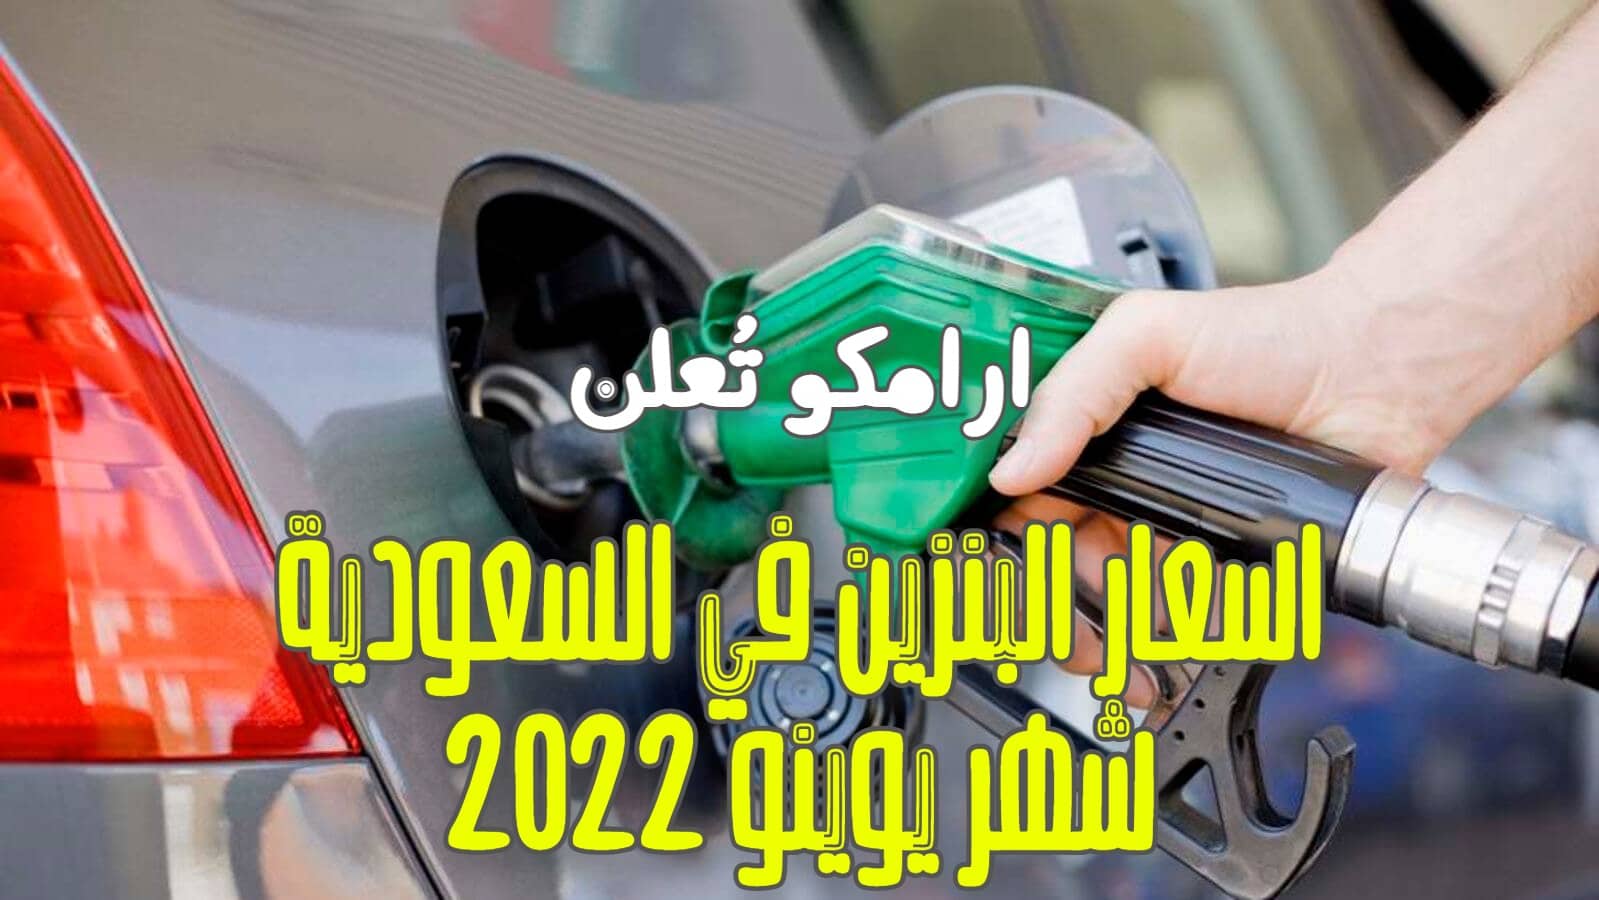 ارامكو تُعلن اسعار البنزين لشهر يونيو 2022 الان